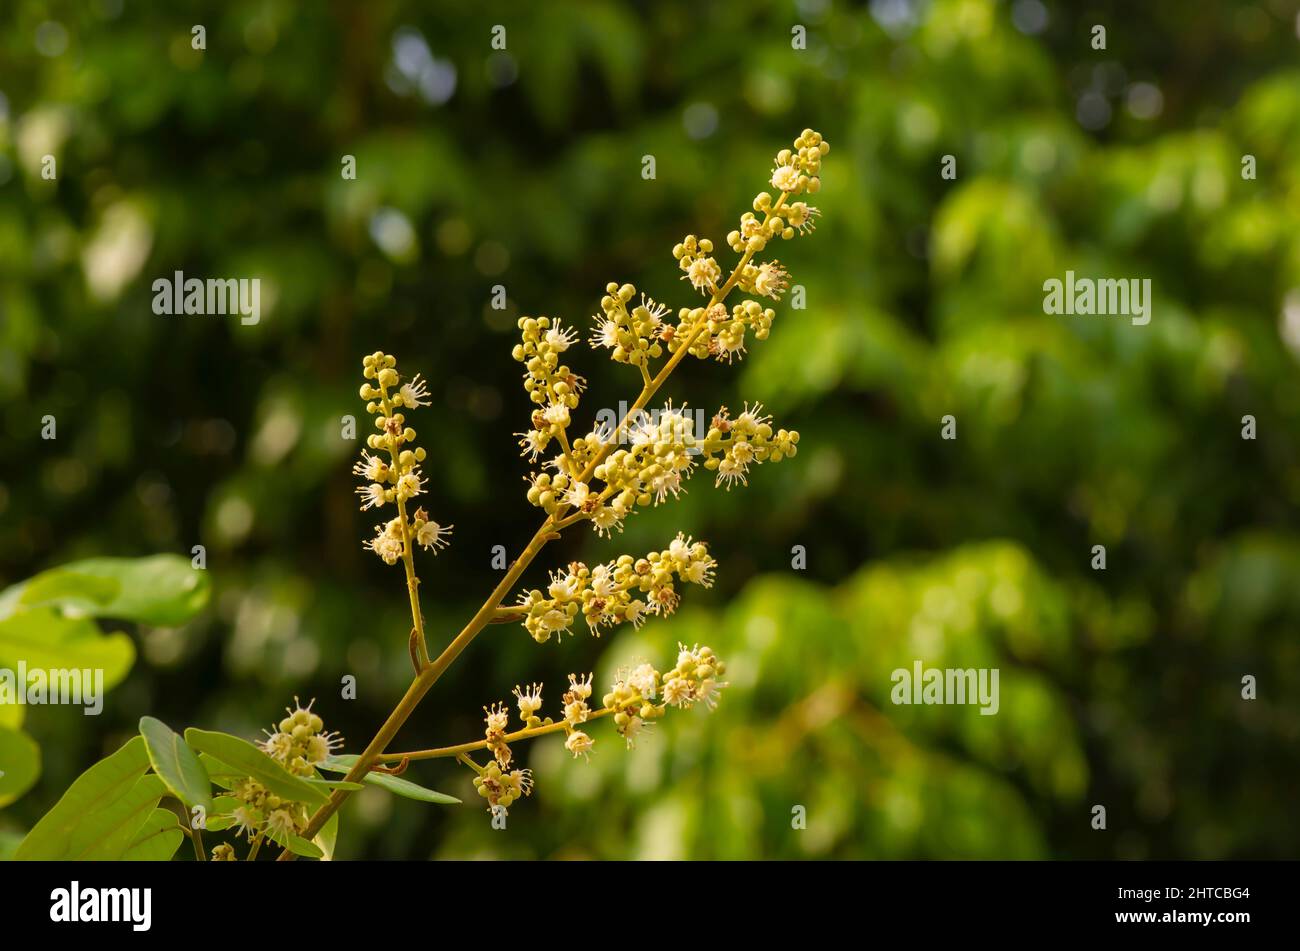 Fiore longan (Dimocarpus longan), una specie di albero tropicale che produce frutta commestibile Foto Stock